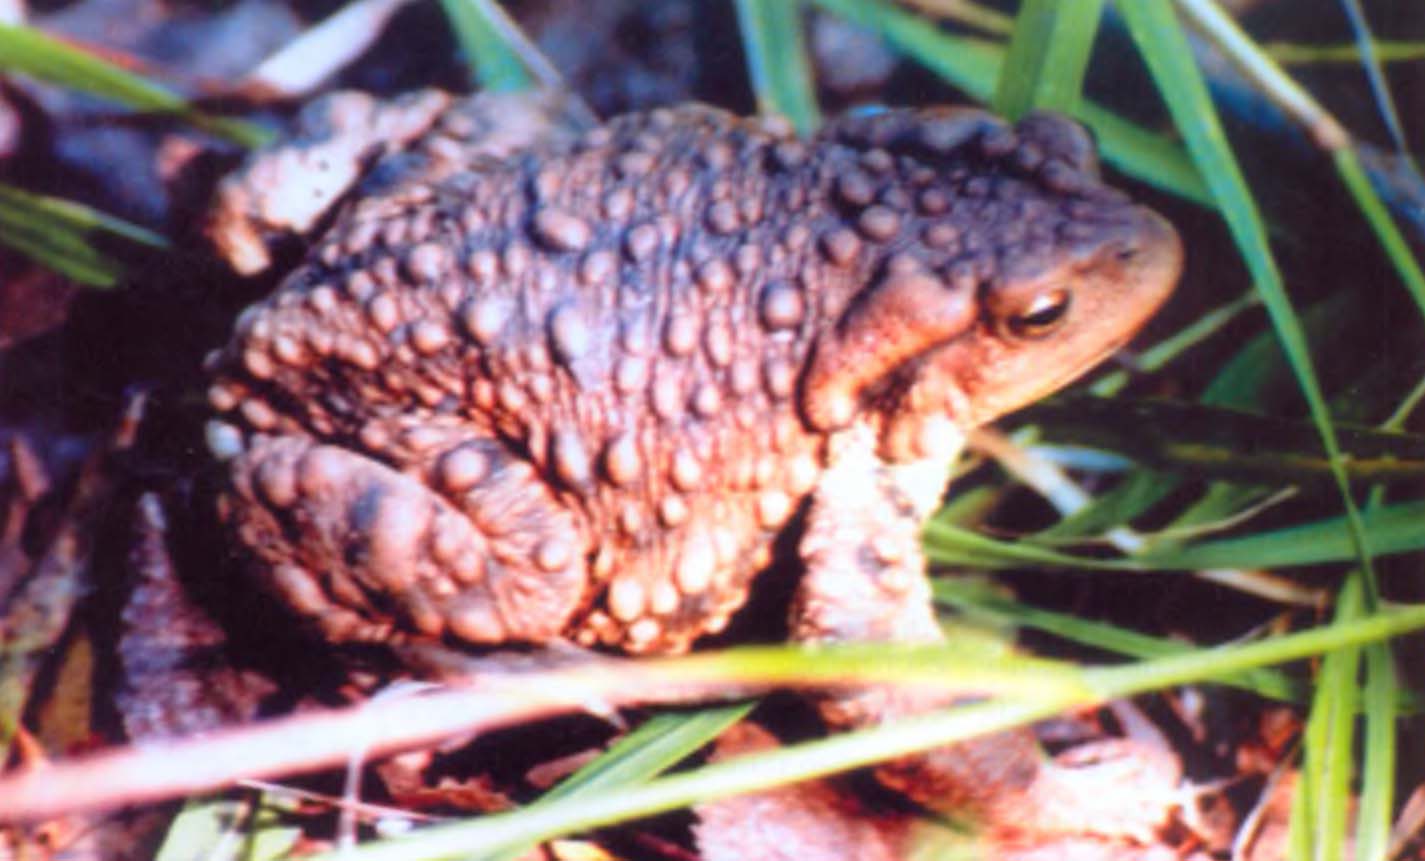 Миншанская жаба (Bufo gargarizans minshanicus) внешне очень похожа на нашу обыкновенную серую жабу (фото В. Боброва).